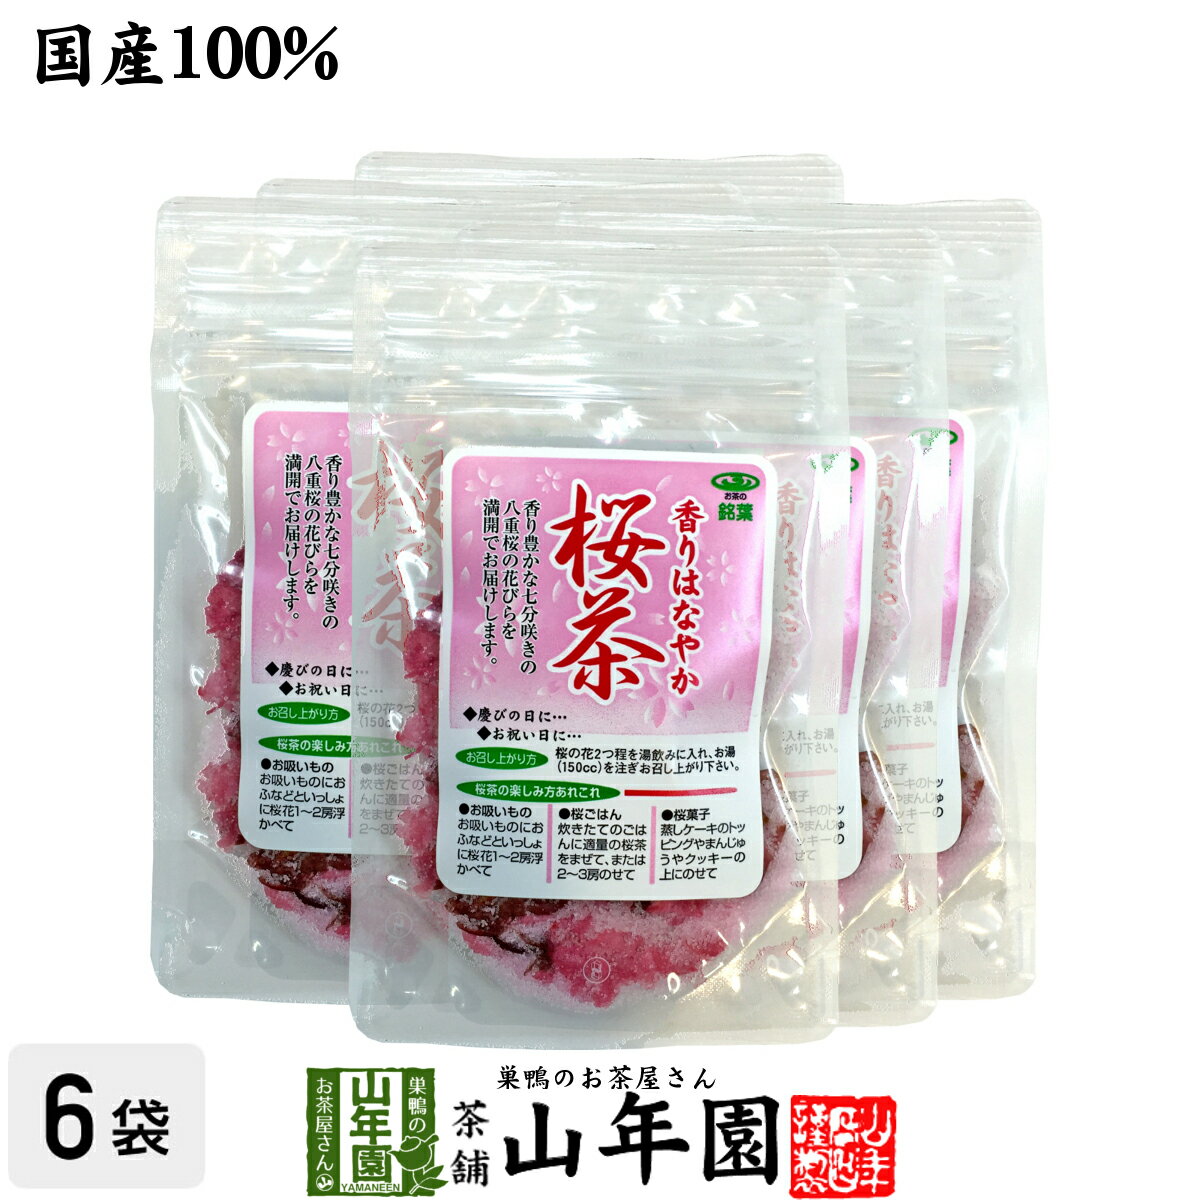 【国産100%】桜茶 40g×6袋セット 送料無料 さくら茶